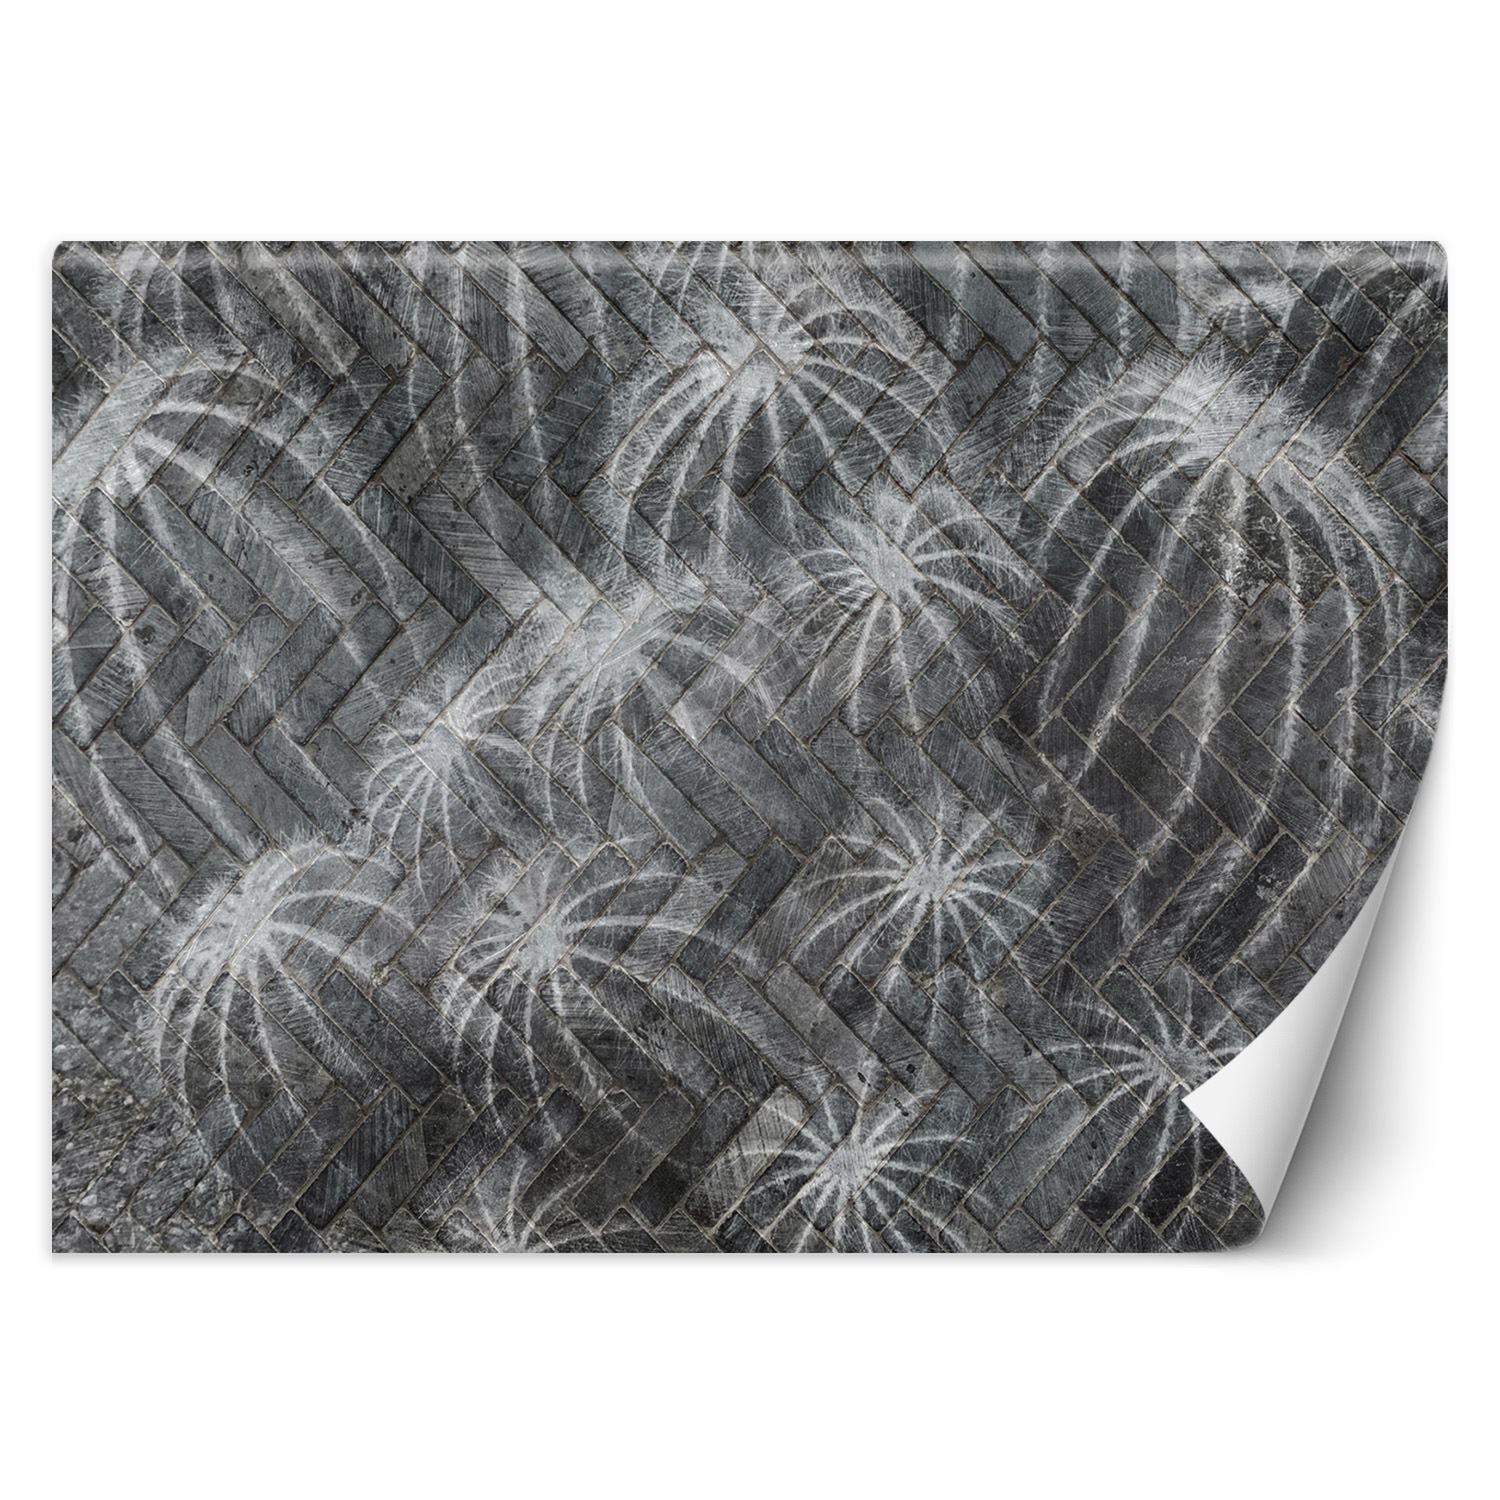 Trend24 – Behang – Cactussen In Grijs – Vliesbehang – Behang Woonkamer – Fotobehang – 100×70 cm – Incl. behanglijm